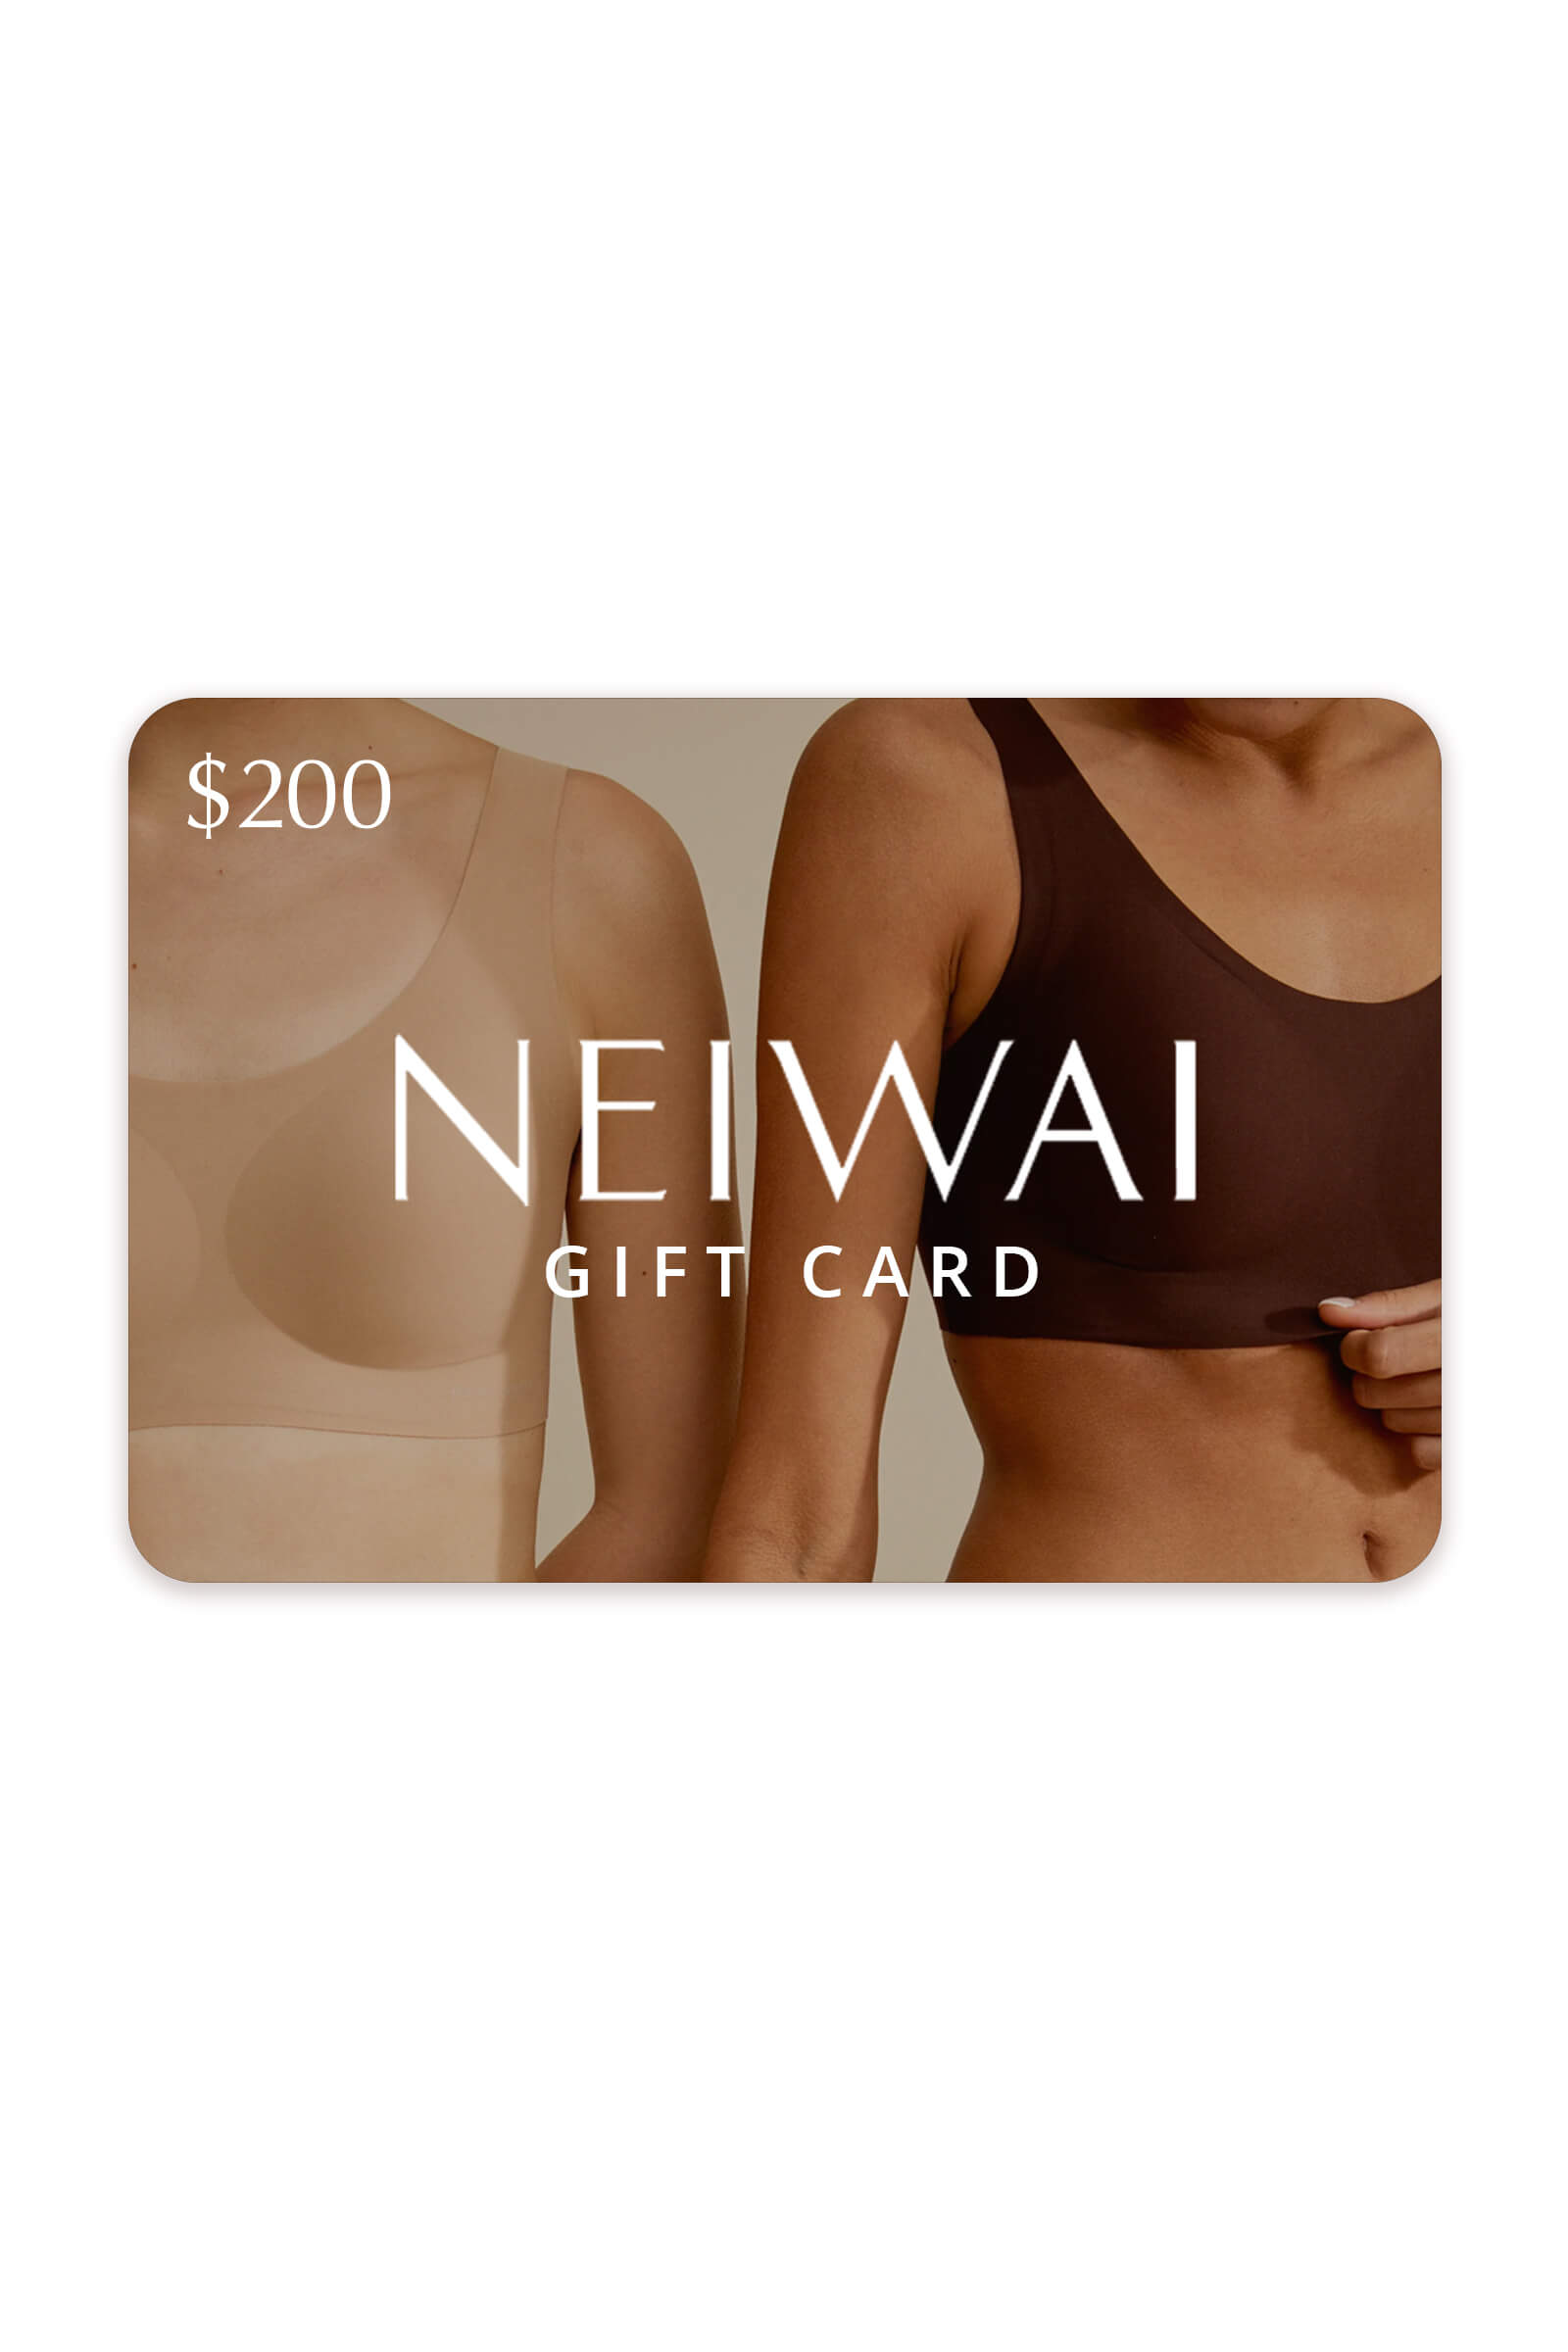 NEIWAI Gift Card